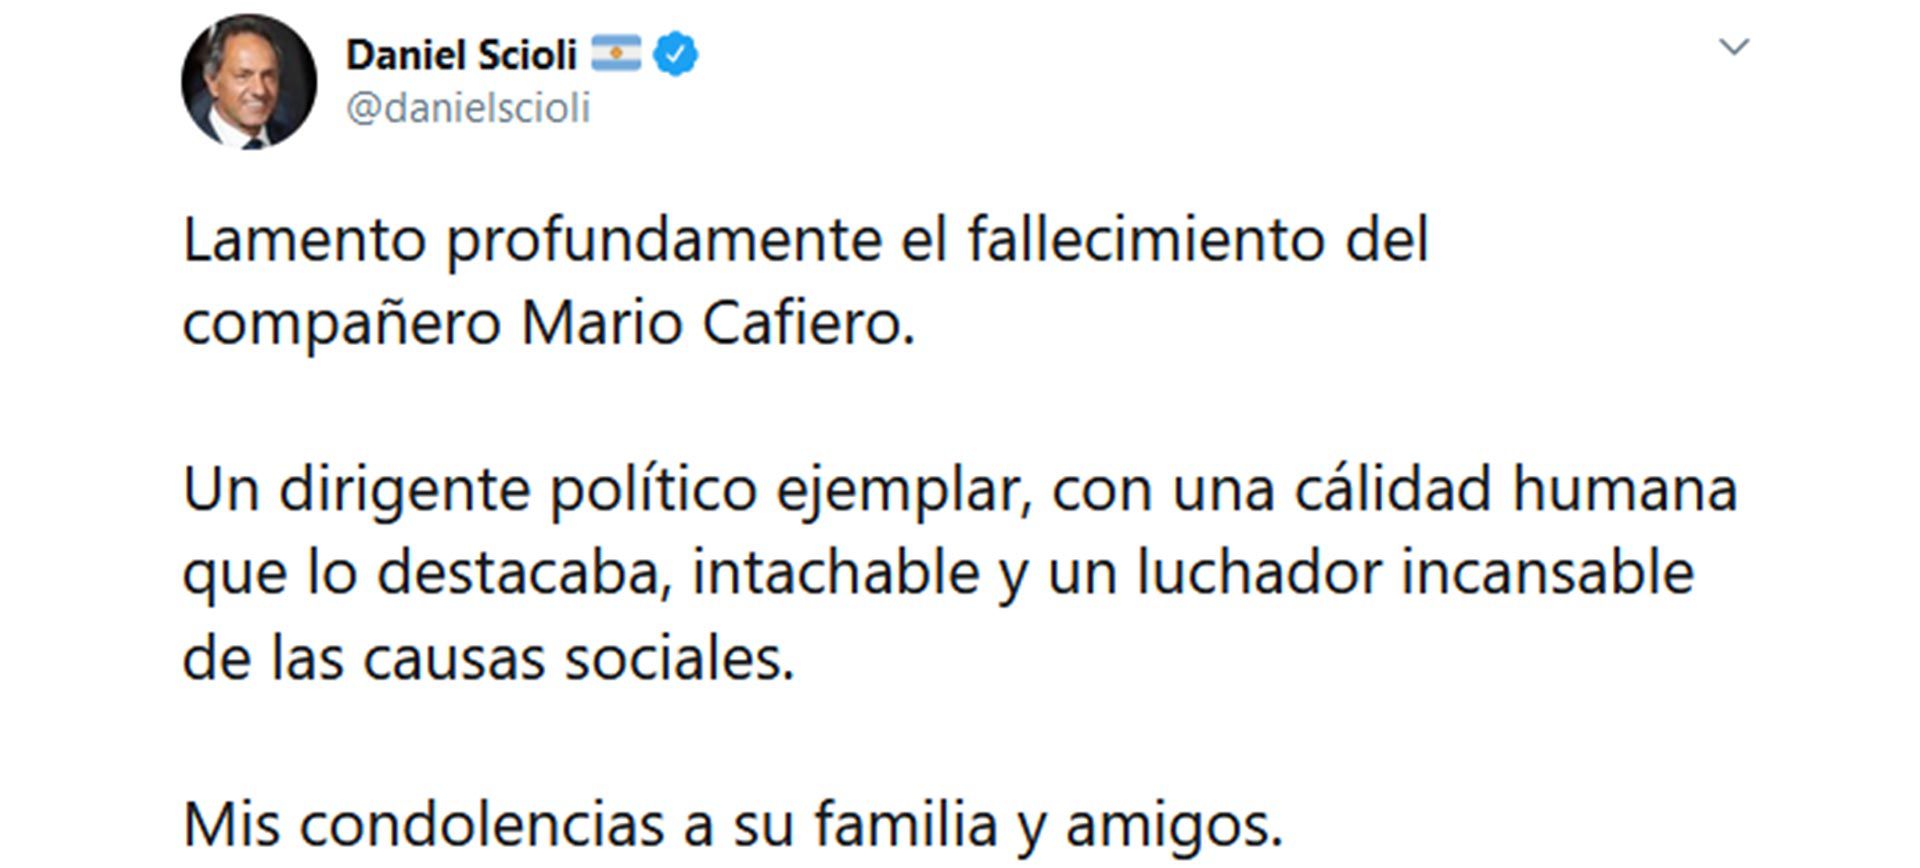 Despedida de Politicos a Mario Cafiero